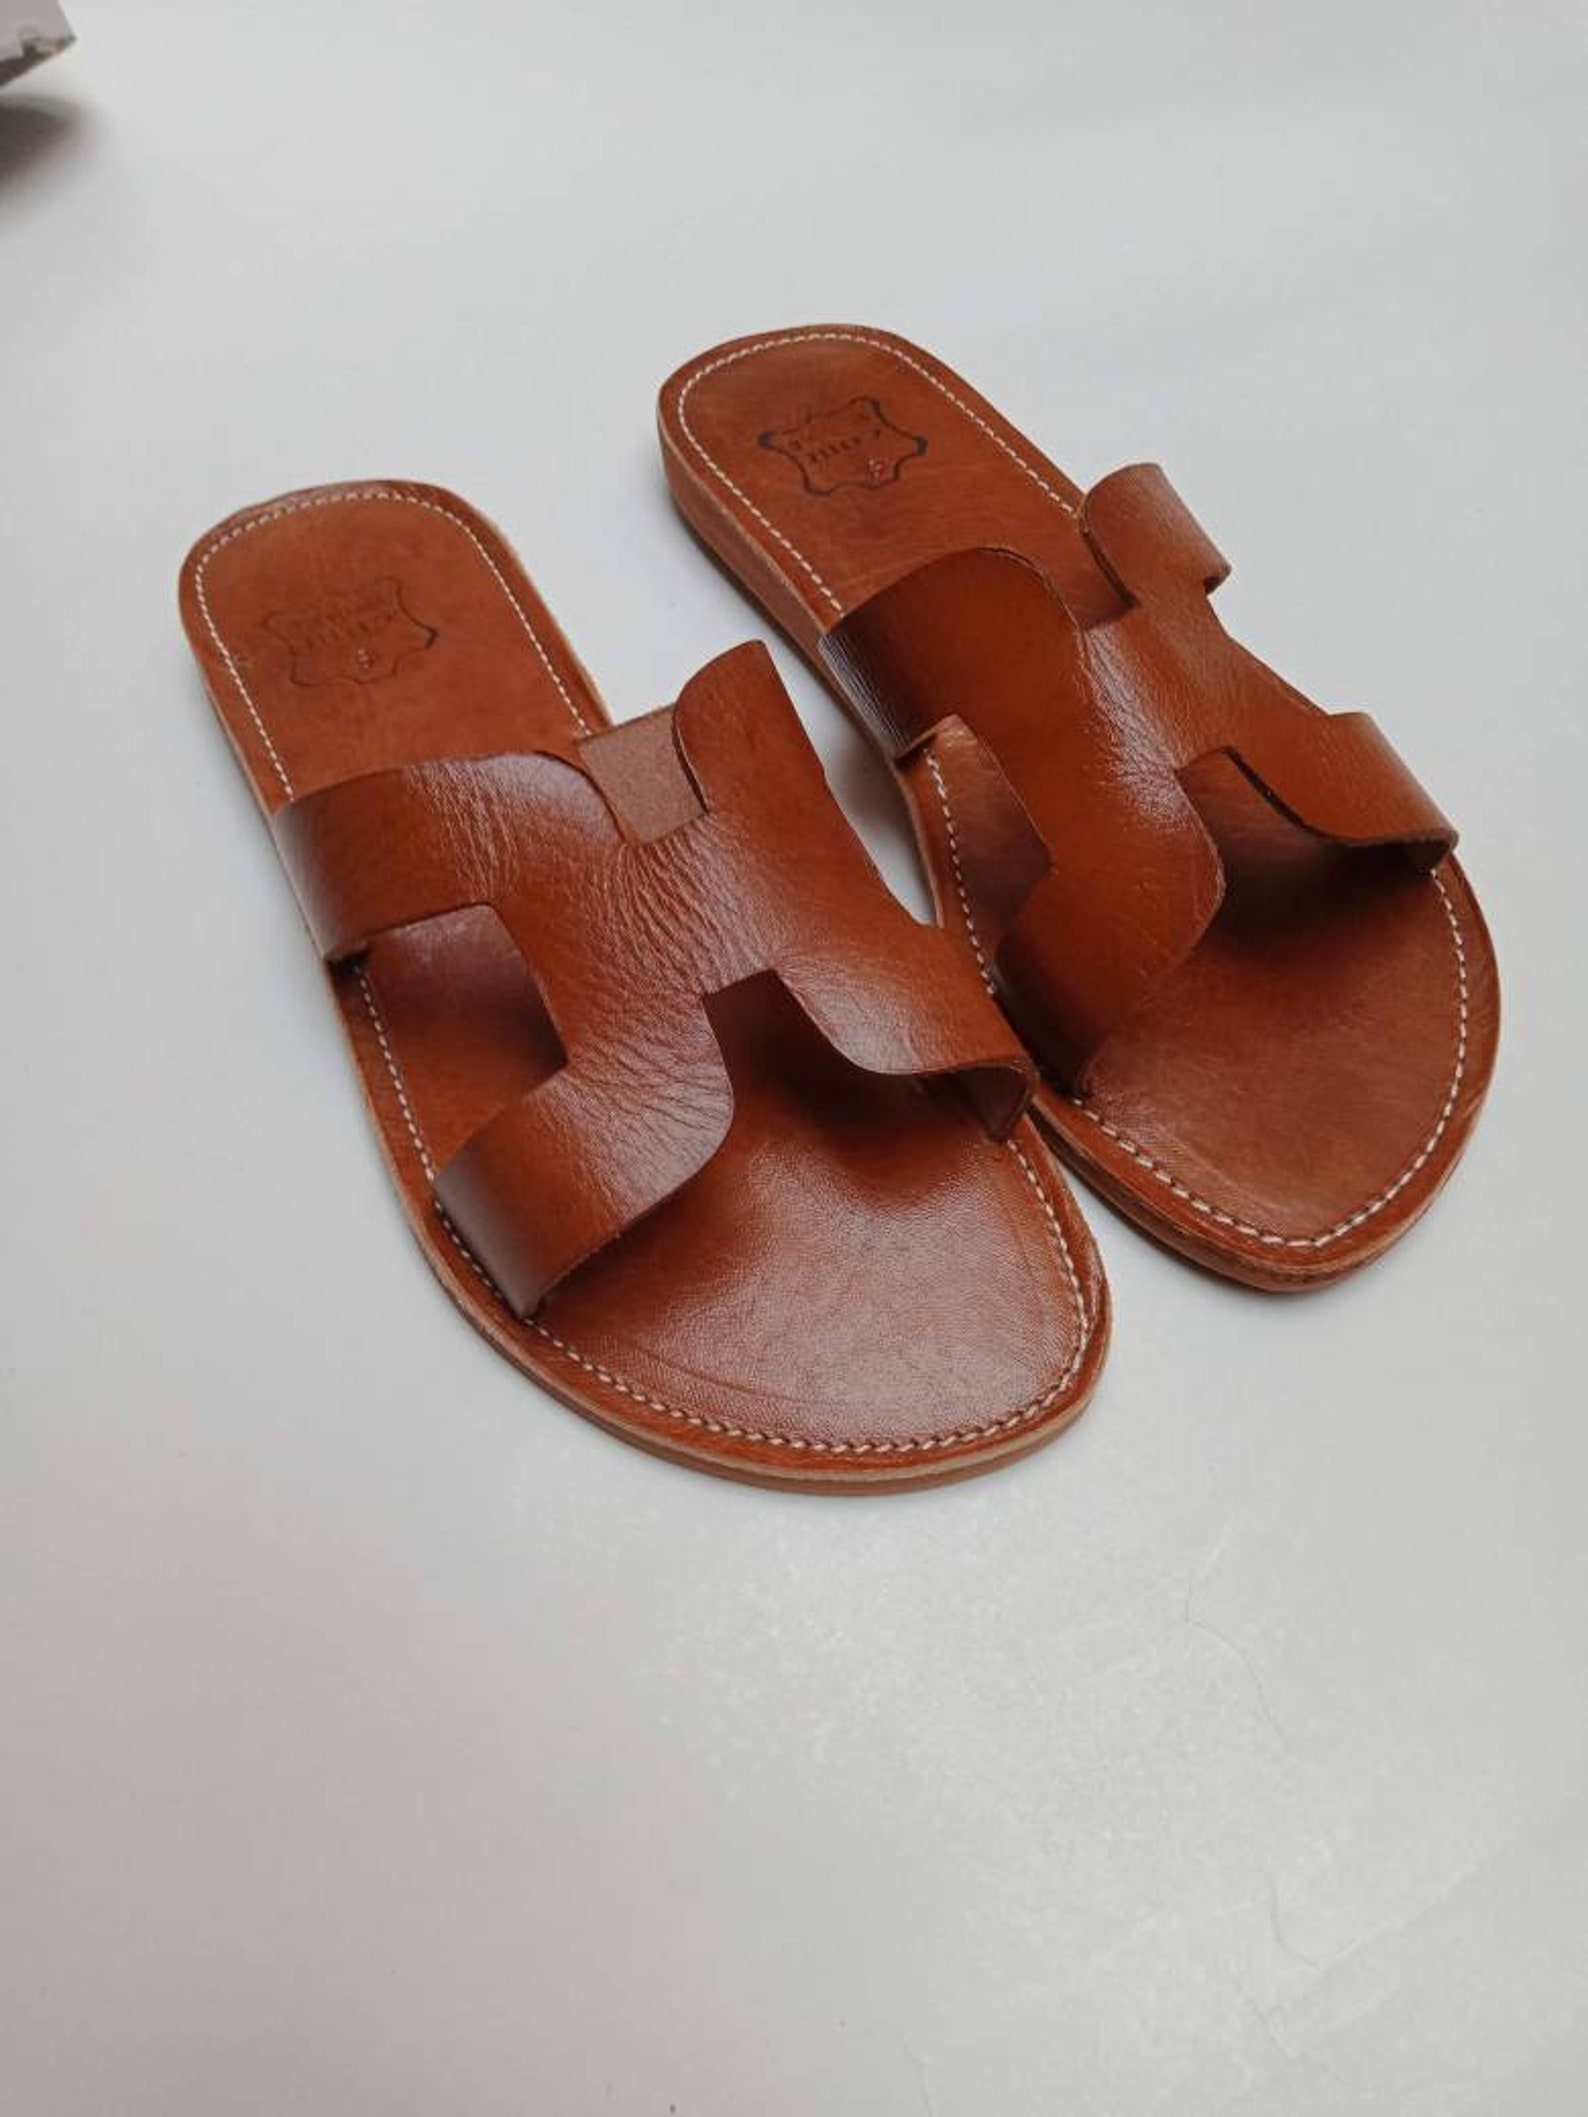 Sandales façon hermès pour femme / chaussures d'été / | Etsy